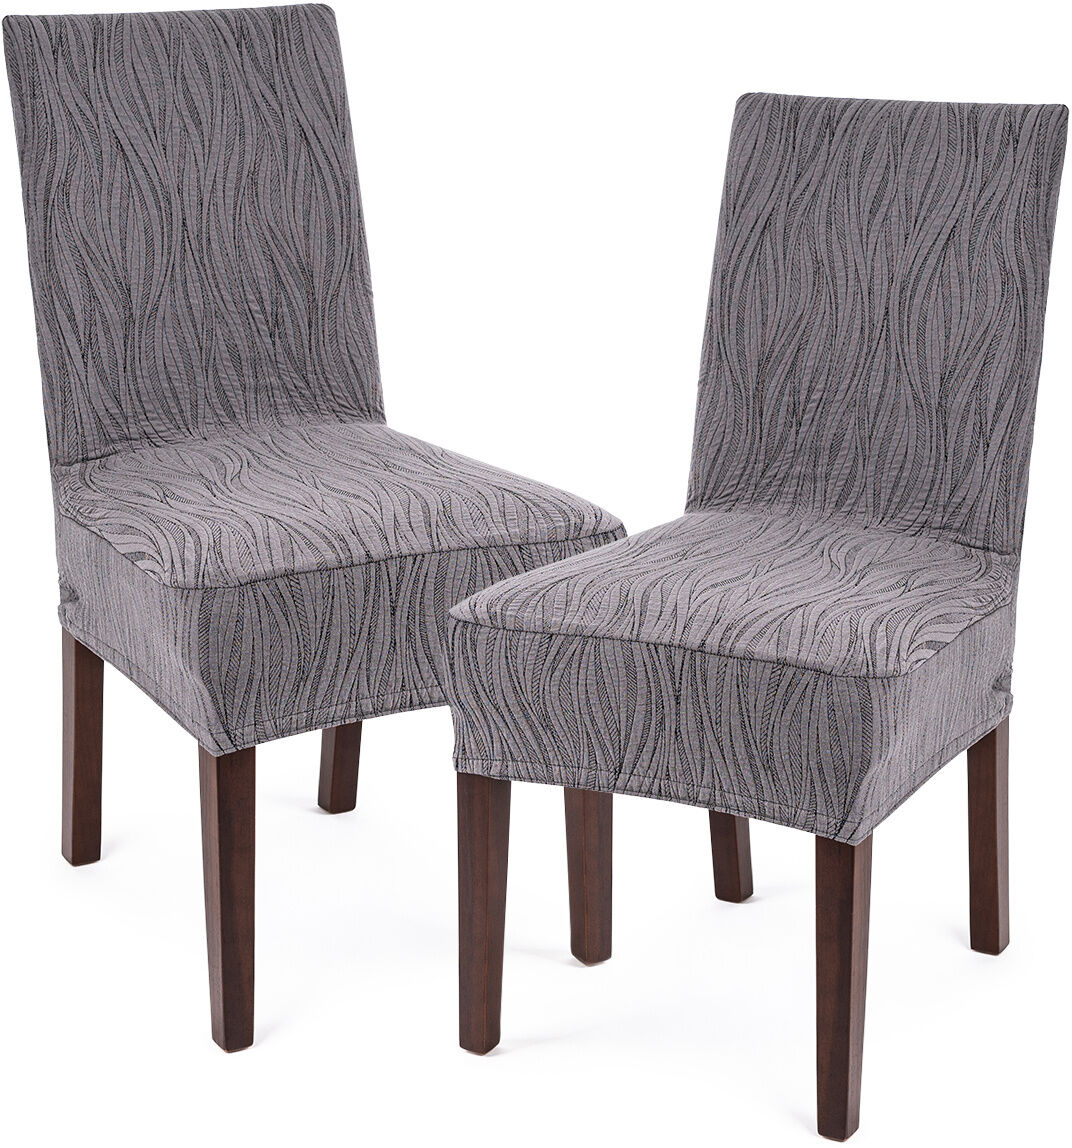 4Home Elastyczny pokrowiec na krzesło Comfort Plus Wave, 40 - 50 cm, komplet 2 szt.